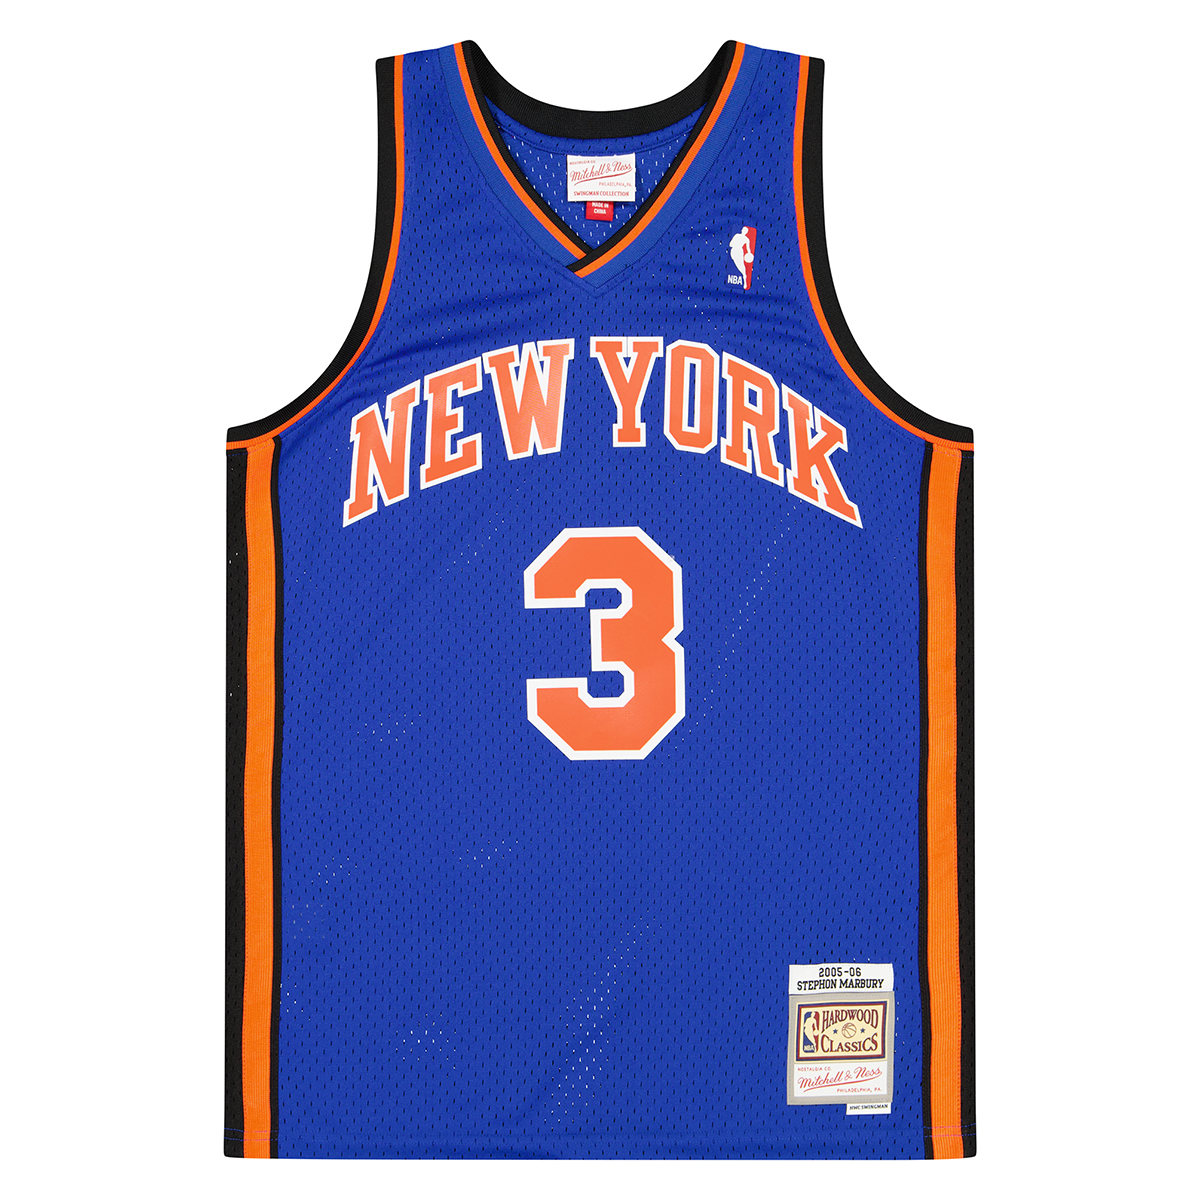 Reebok NBA Swingman HWC Jersey New York Knicks Stephon